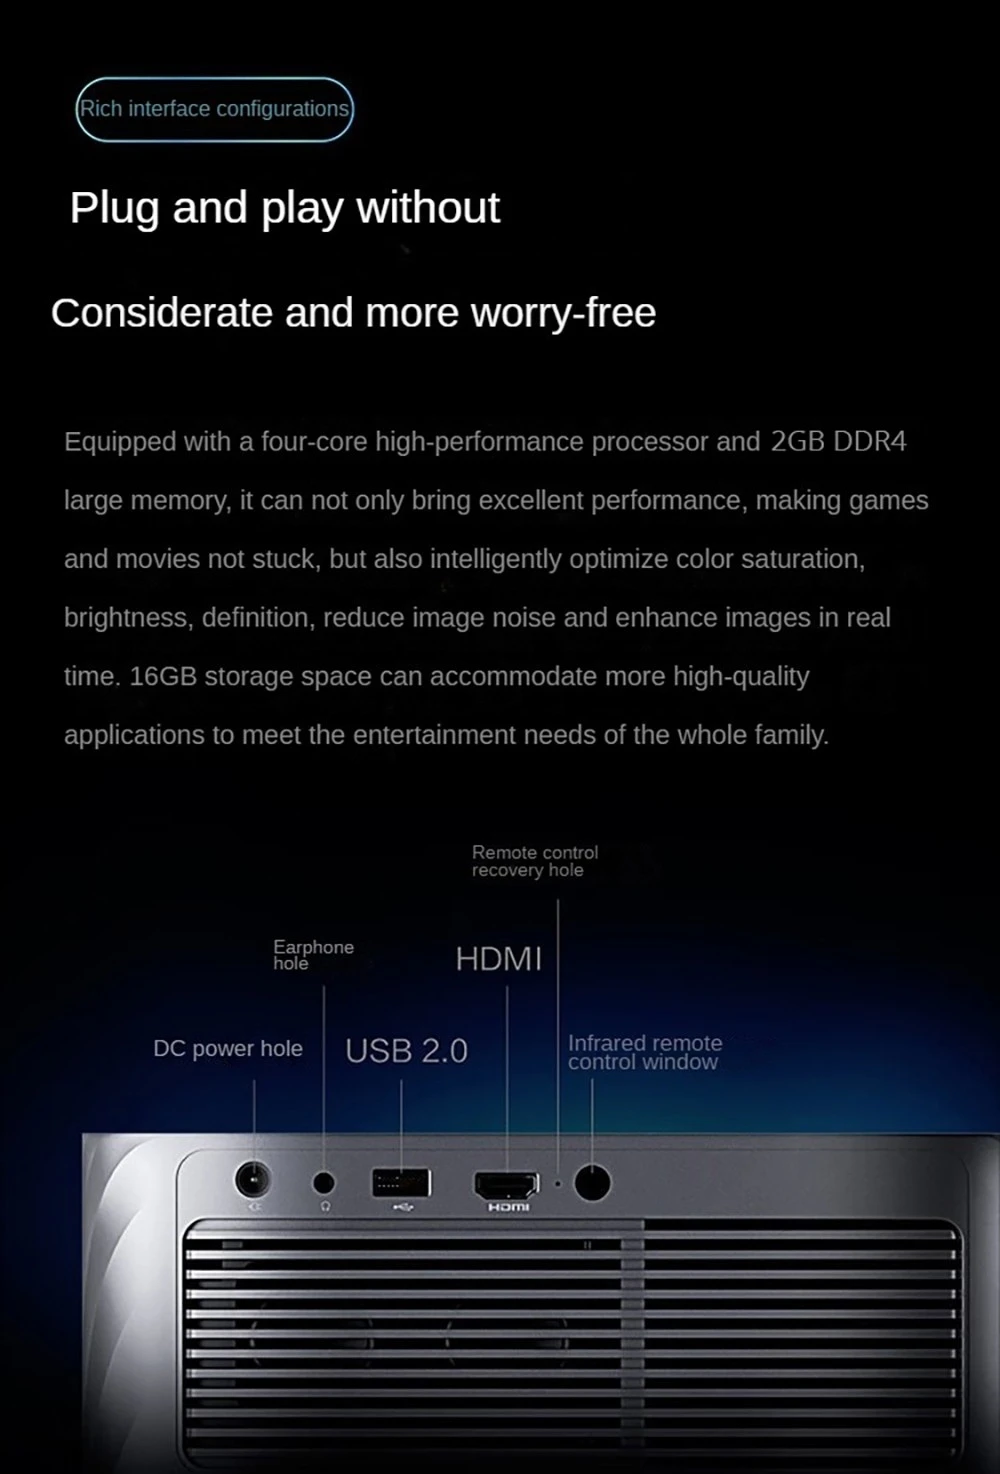 โปรเจคเตอร์ Lenovo Xiaoxin 100, 1080P 700ANSI Lumens 2GB + 16GB WiFi 6 Bluetooth 5.0 การแก้ไขภาพสี่เหลี่ยมคางหมูอัตโนมัติ - สีดำ